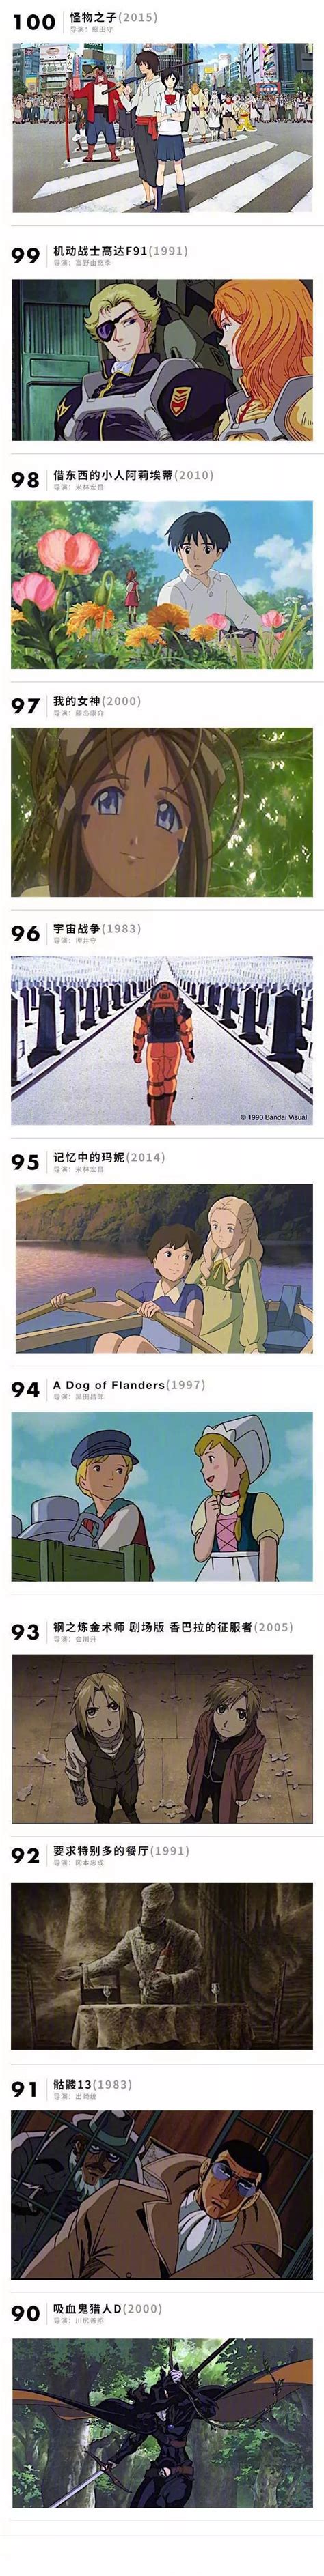 【二次元推荐】100部最值得一看的日本动画电影